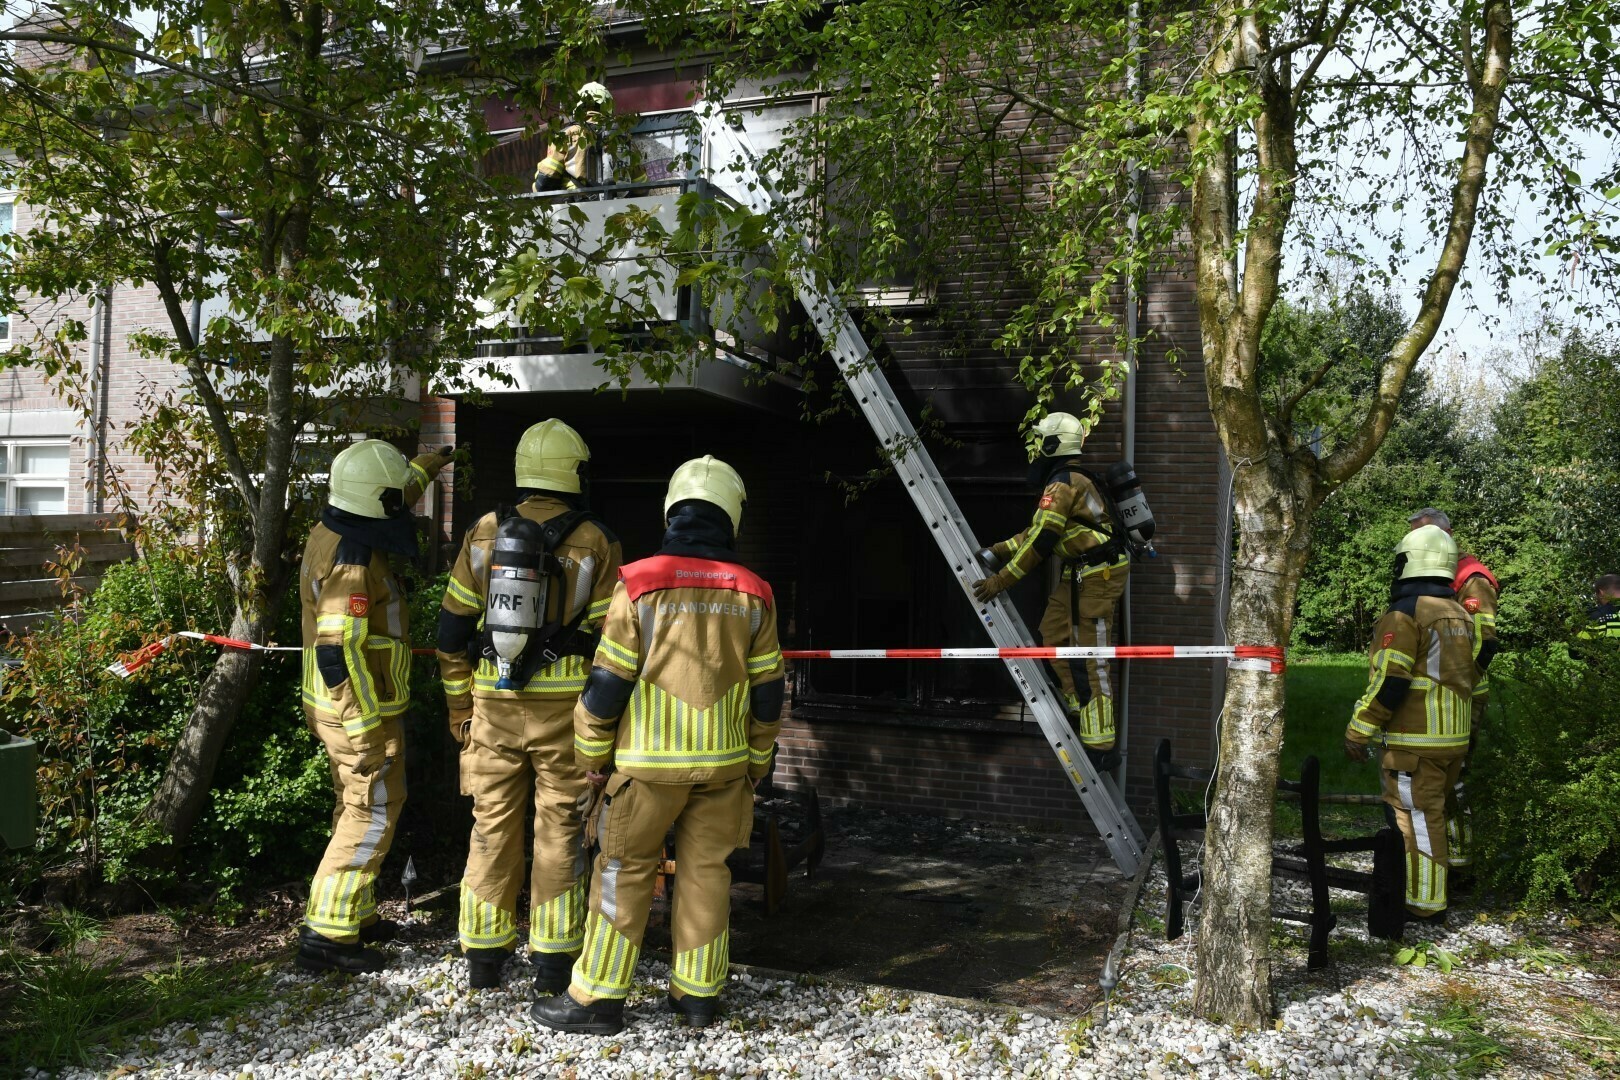 Brand achter portiekwoning, onderzoek naar brandstichting